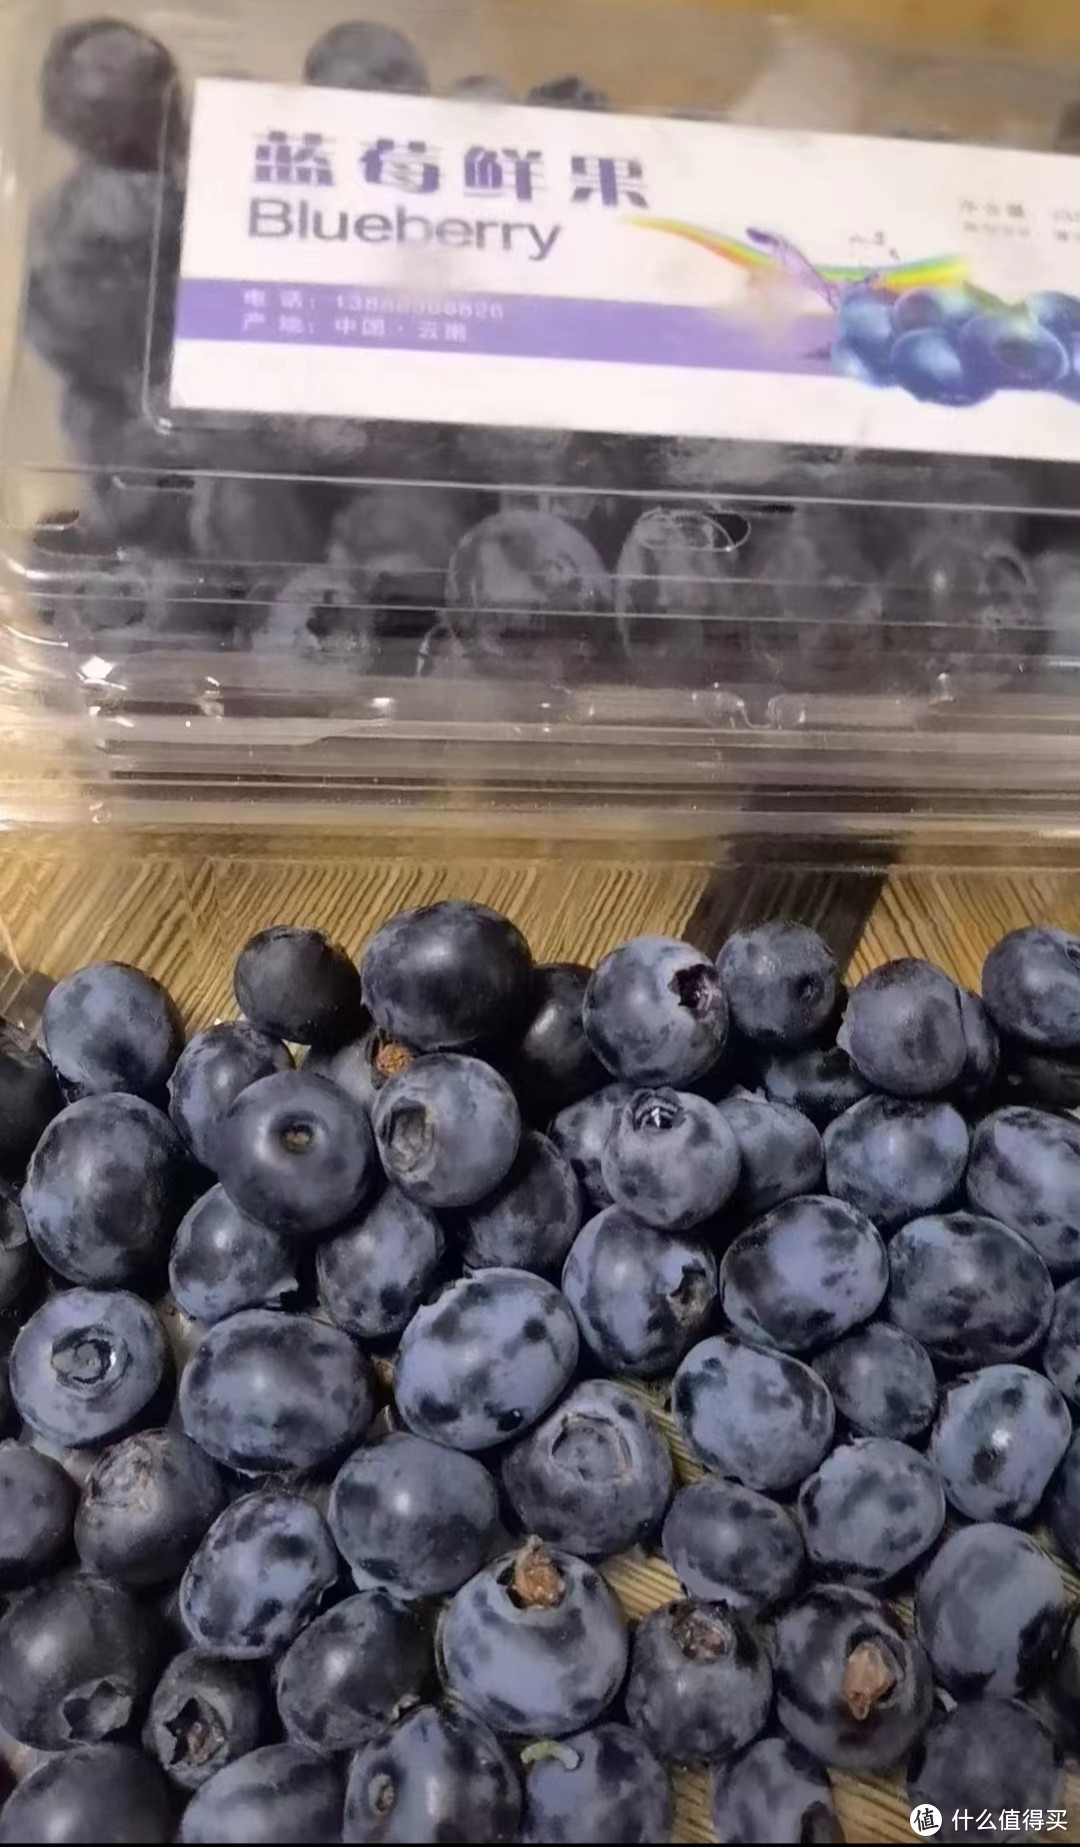 到果园采摘蓝莓，感觉蓝莓价高是应该的😂